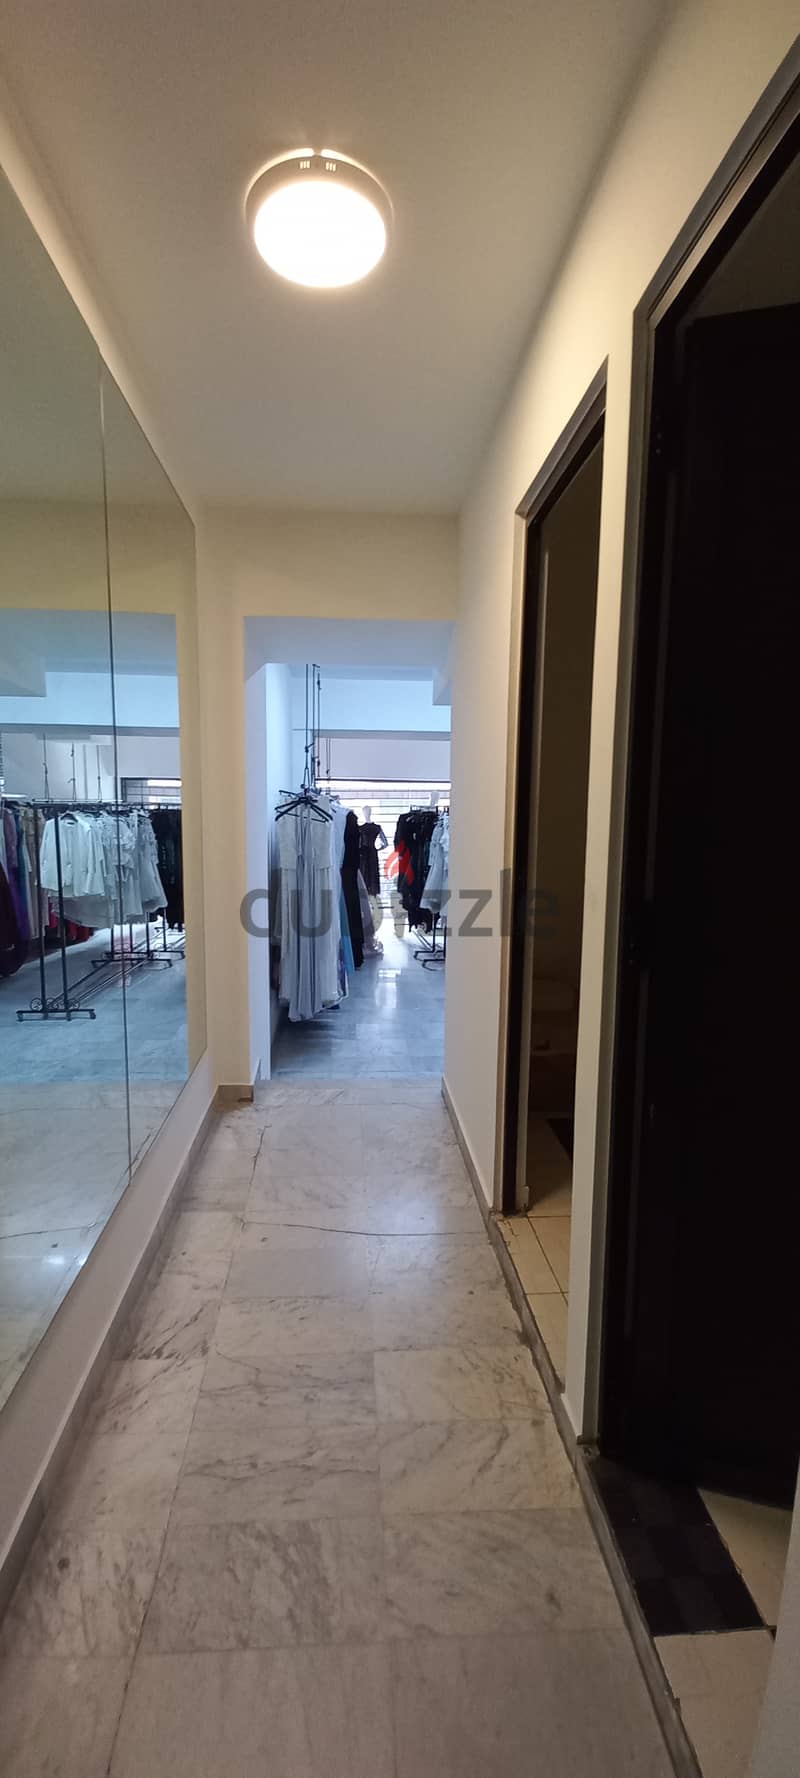 Triplex Shop in Zalka souk for saleمحل تريبلكس وسوق الزلقا للبيع 13